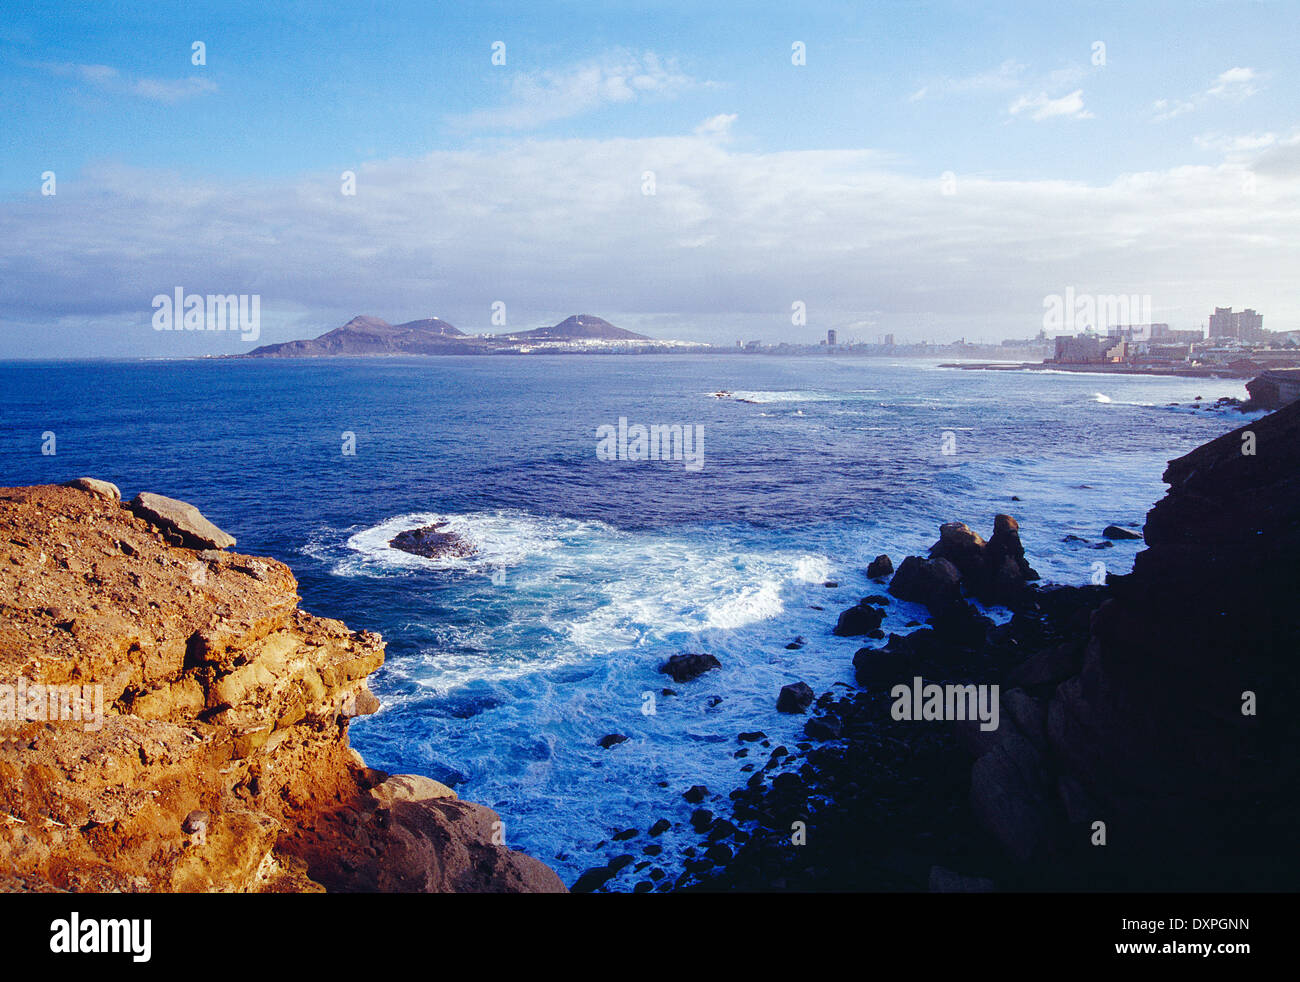 Overview and coastline. Las Palmas de Gran Canaria, Canary Islands, Spain. Stock Photo